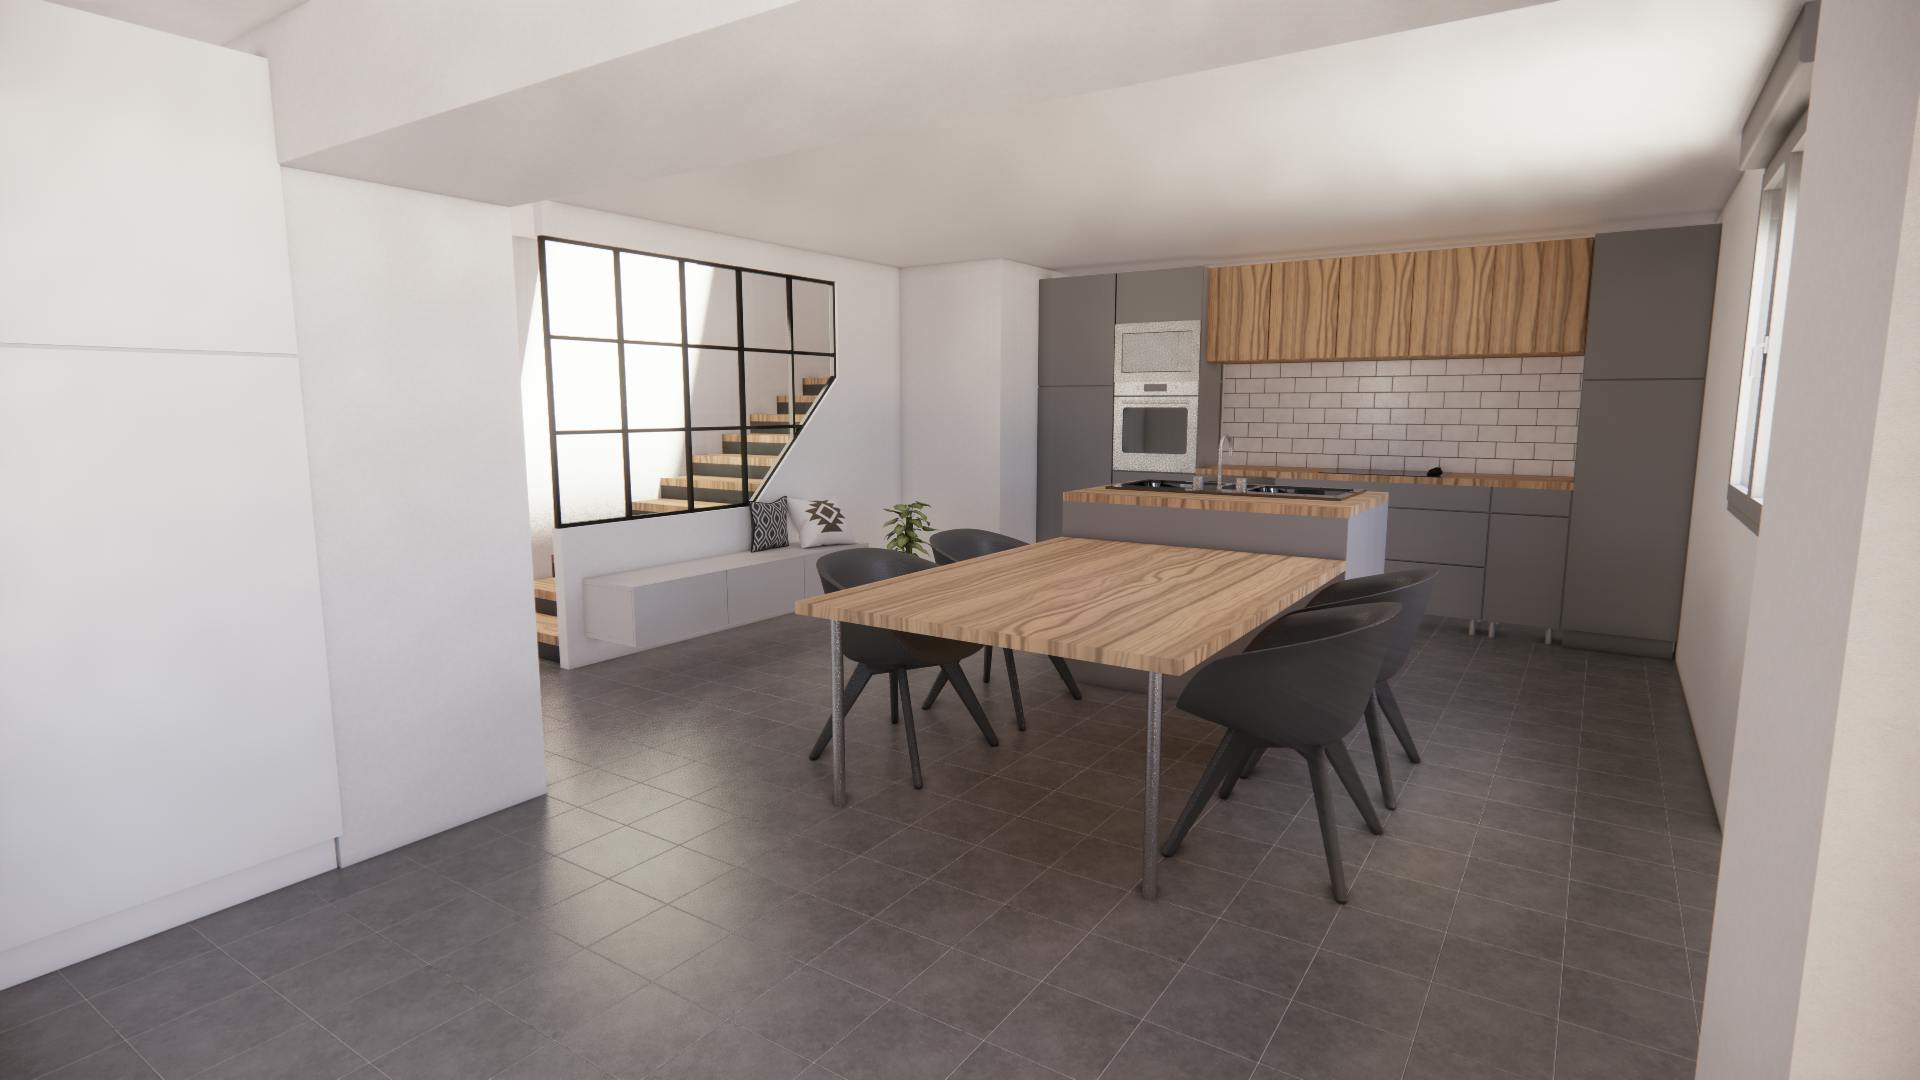 vue 3D de la cuisine après la rénovation de cette maison par Architéa 